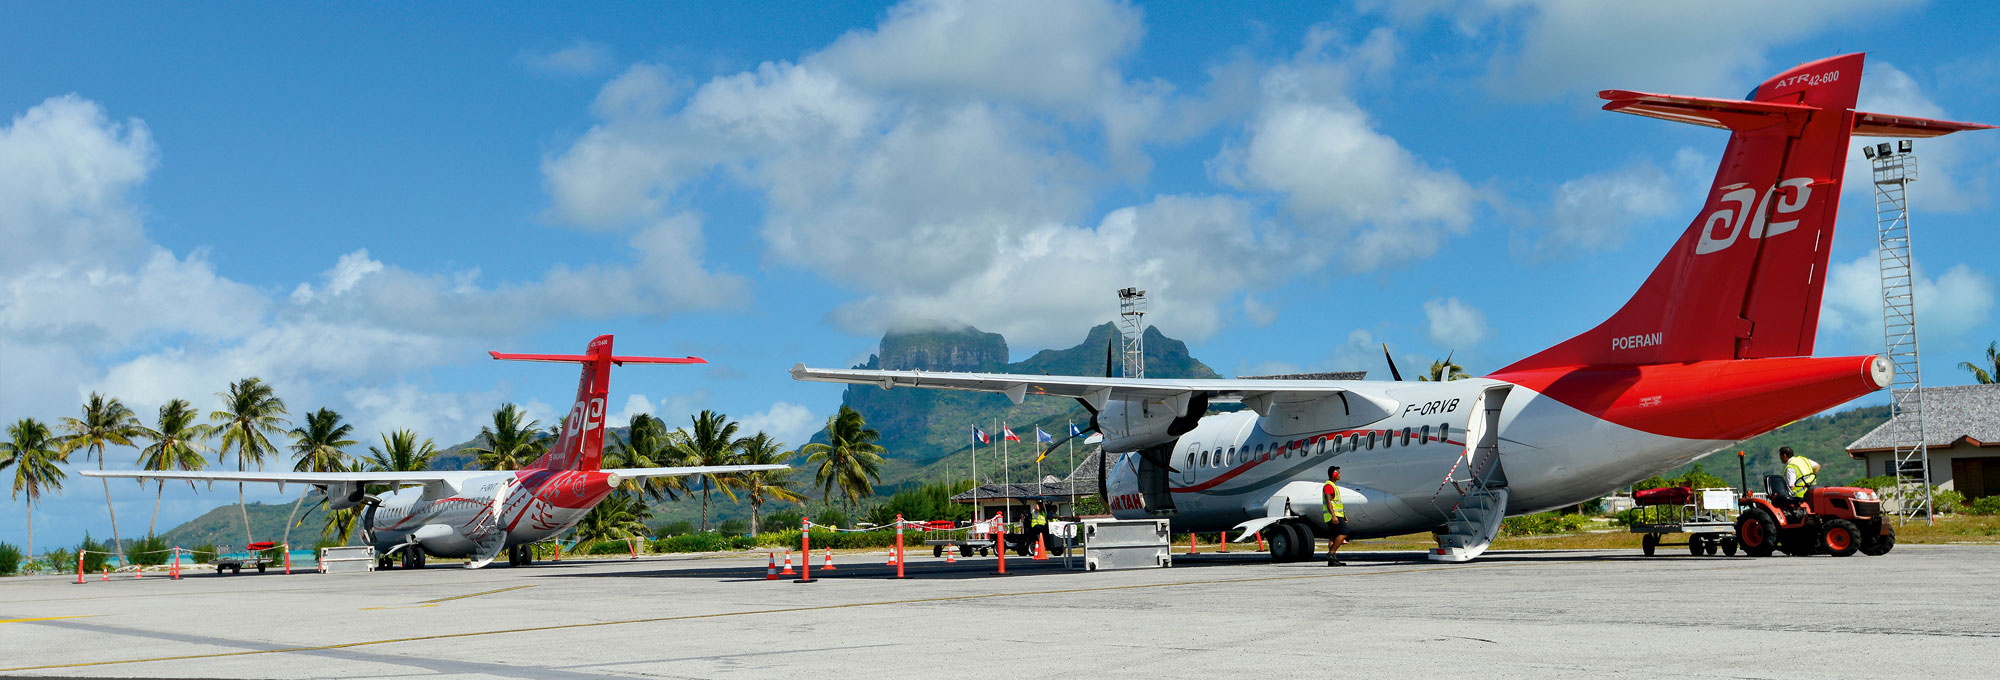 Air Tahiti aircraft on Bora Bora tarmac - © P. Bacchet